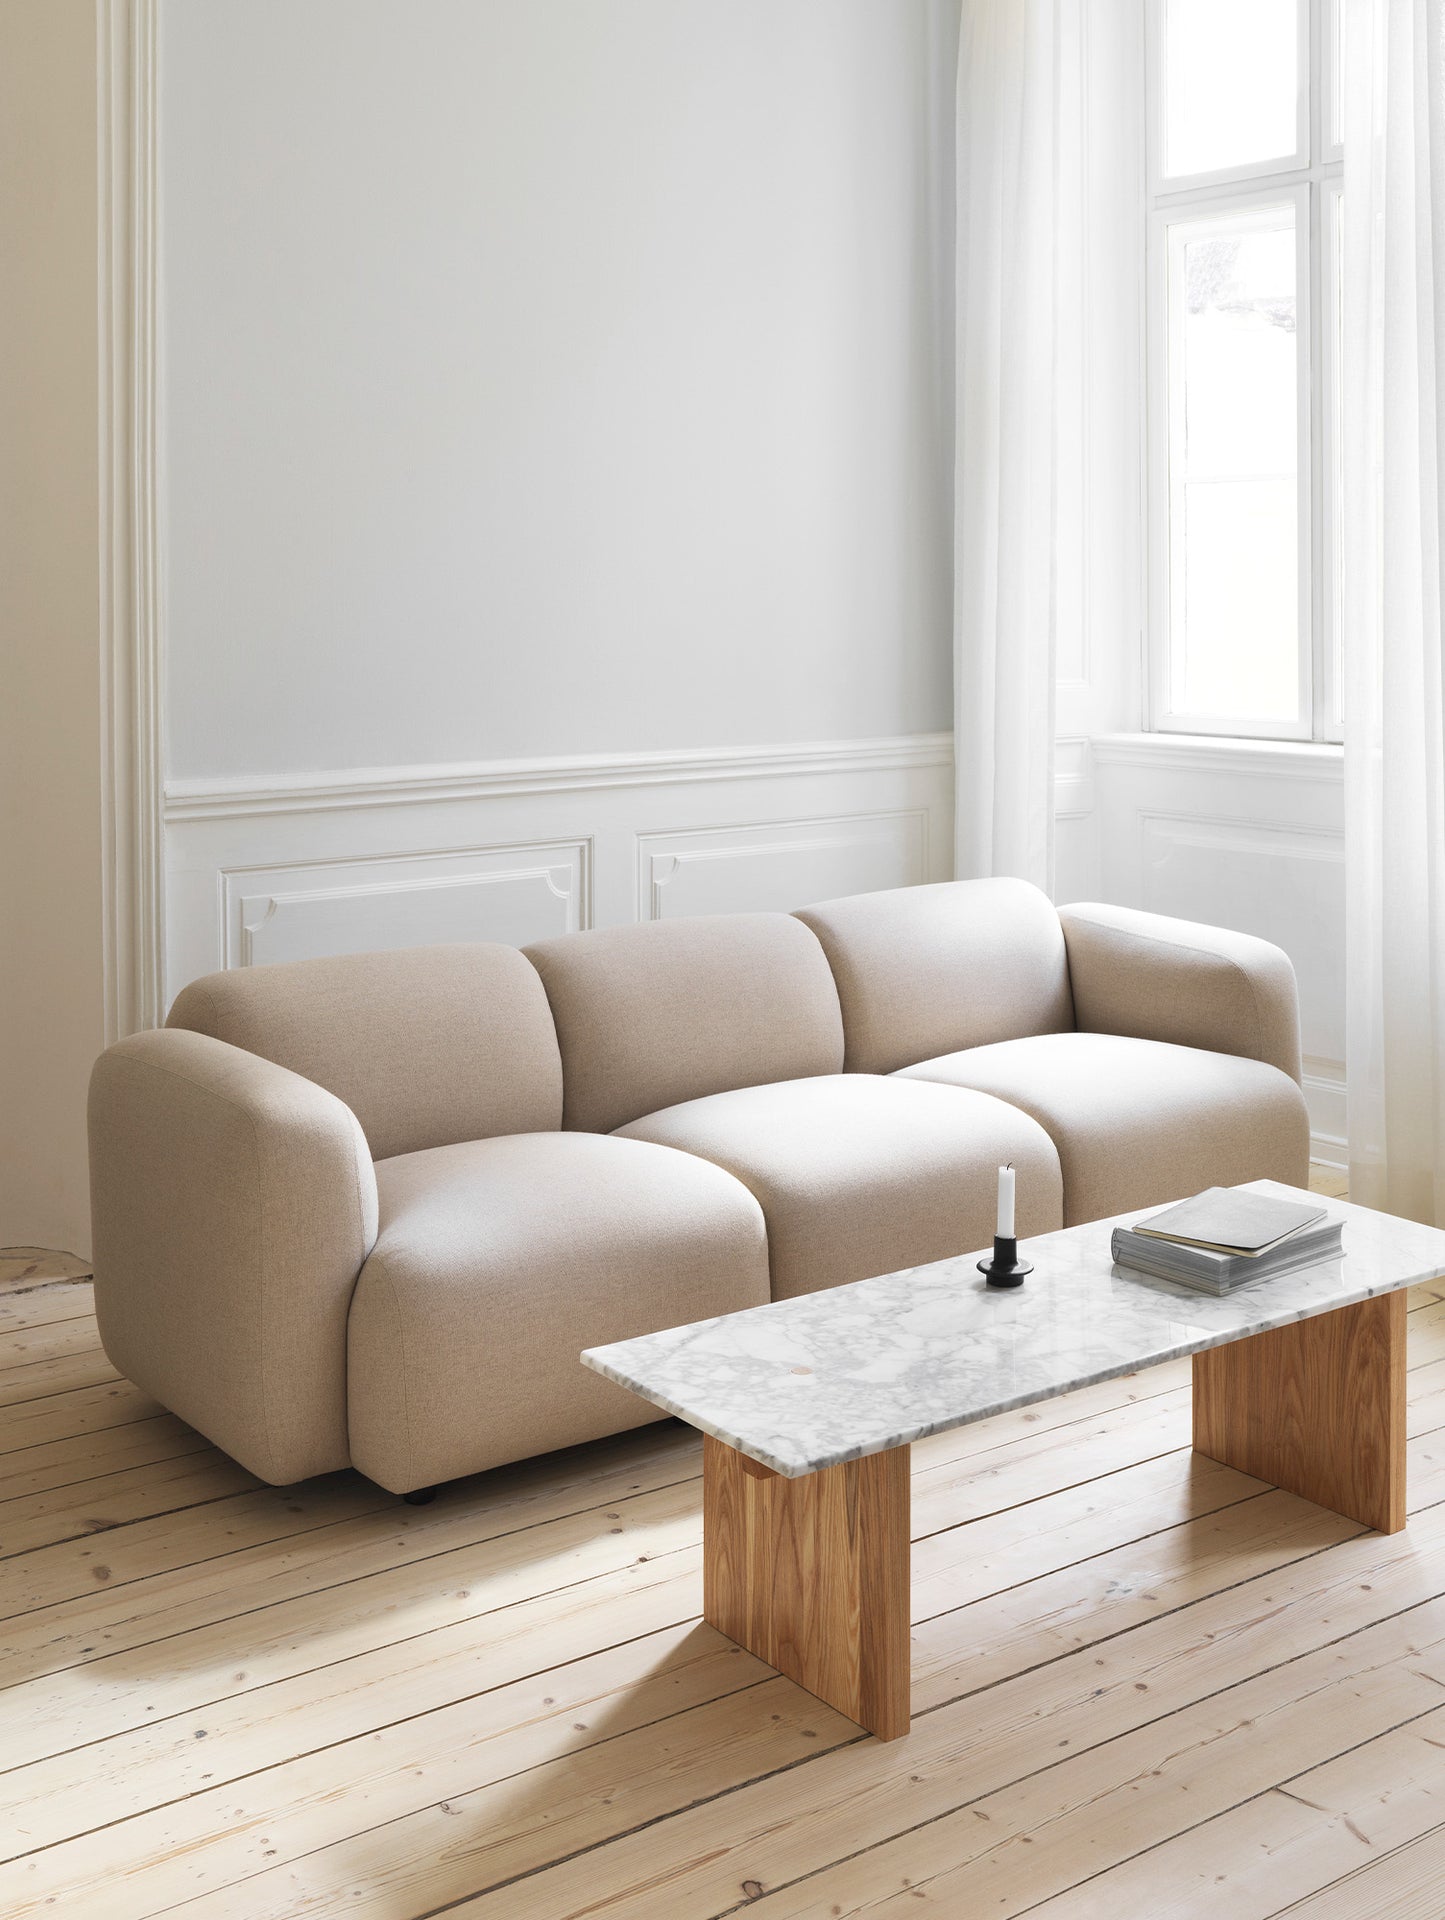 Swell Modular Sofa by Normann Copenhagen / Main Line Flax Upminster MLF20